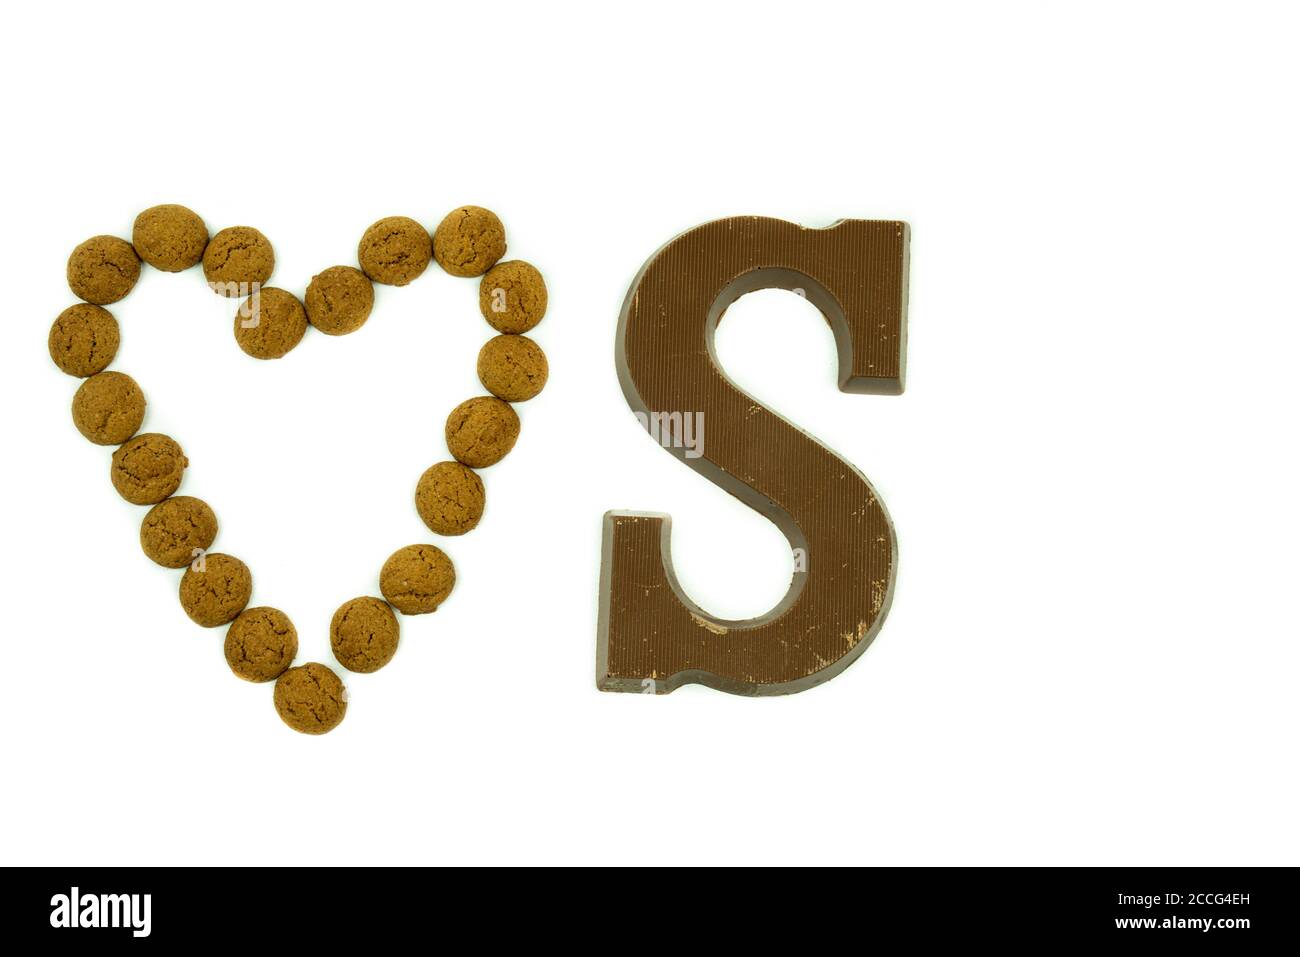 Pepernoten traditionnel hollandais en forme de coeur, avec une lettre de chocolat à côté sur un fond blanc. Gâteries qui sont données Banque D'Images